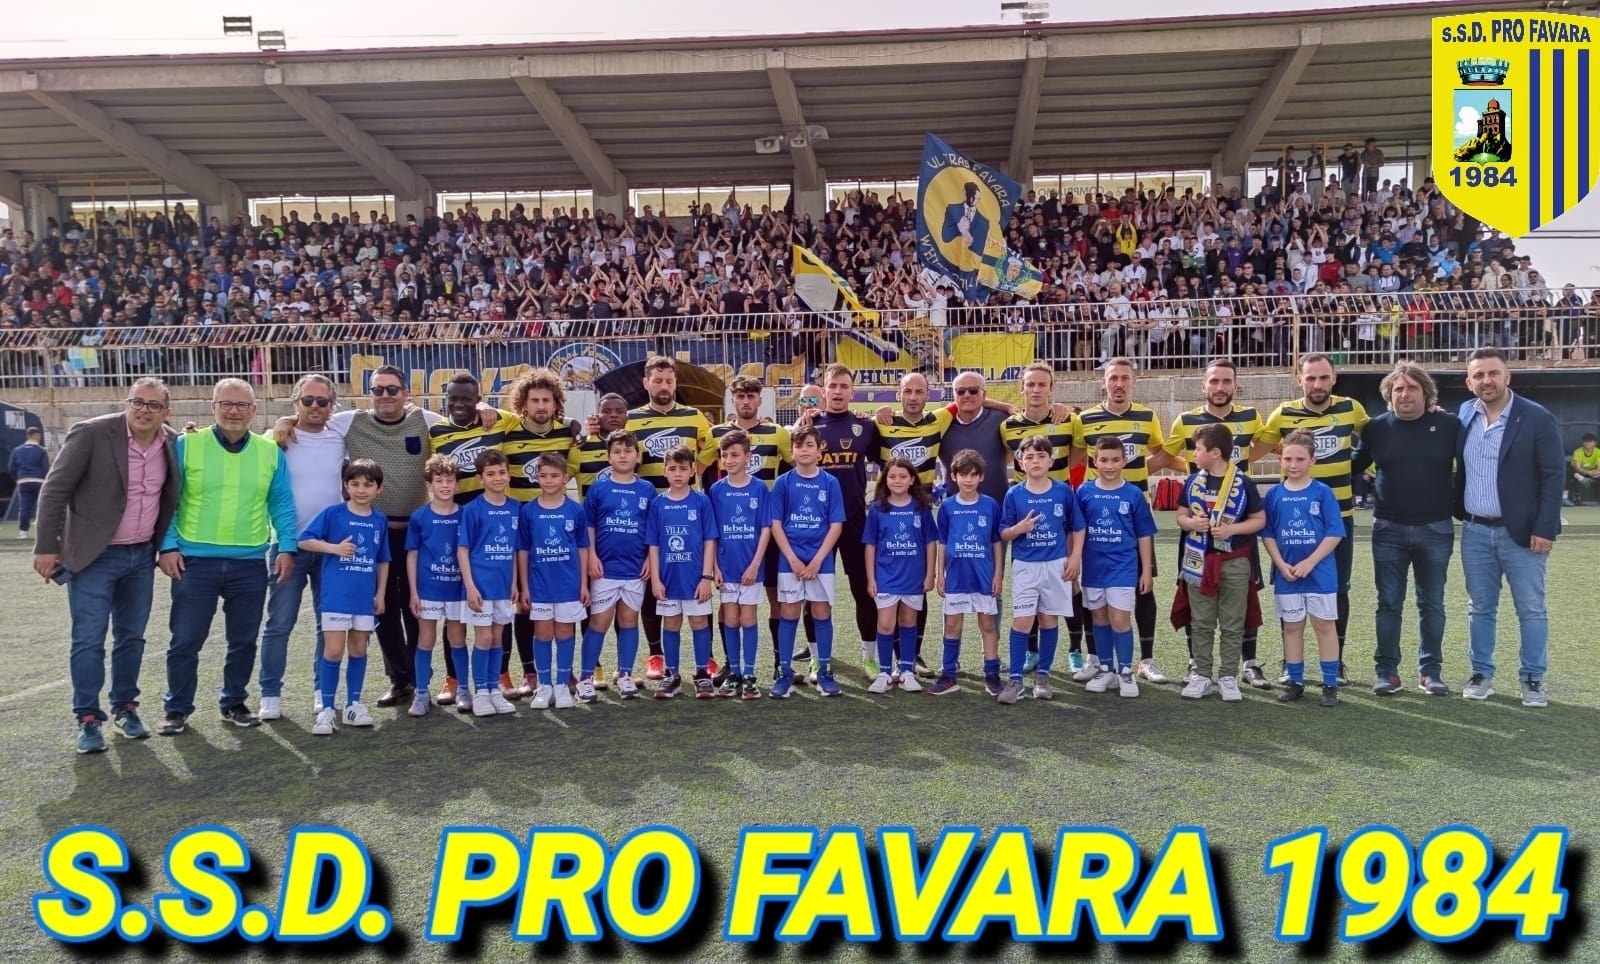 Pro Favara, presidente Rino Castronovo: “Grazie a tutti per il raggiungimento dei playoff”